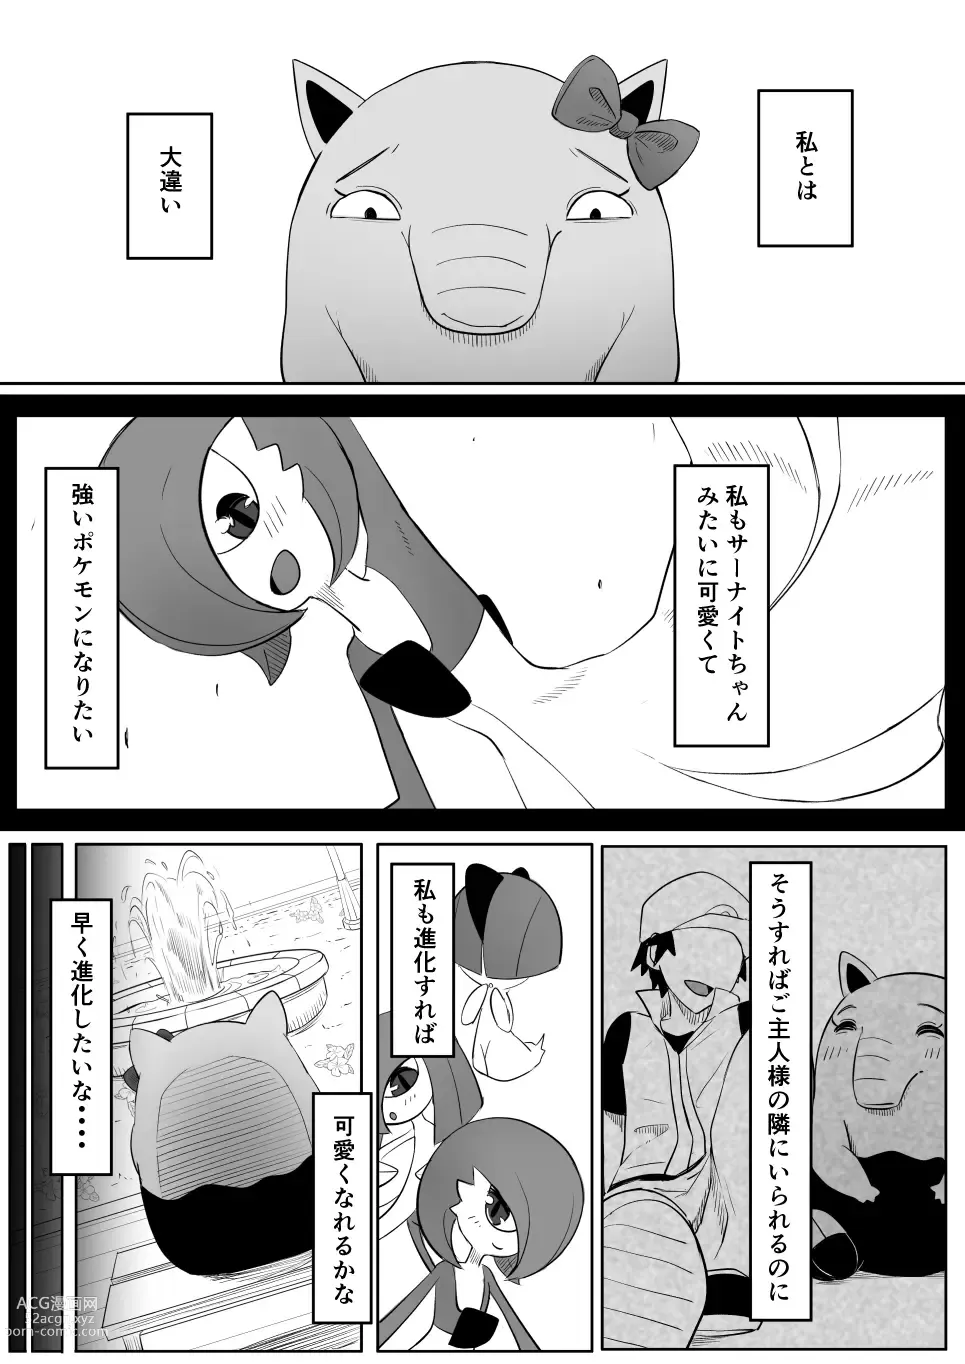 Page 8 of doujinshi Koi o Shita Sleeper-chan.